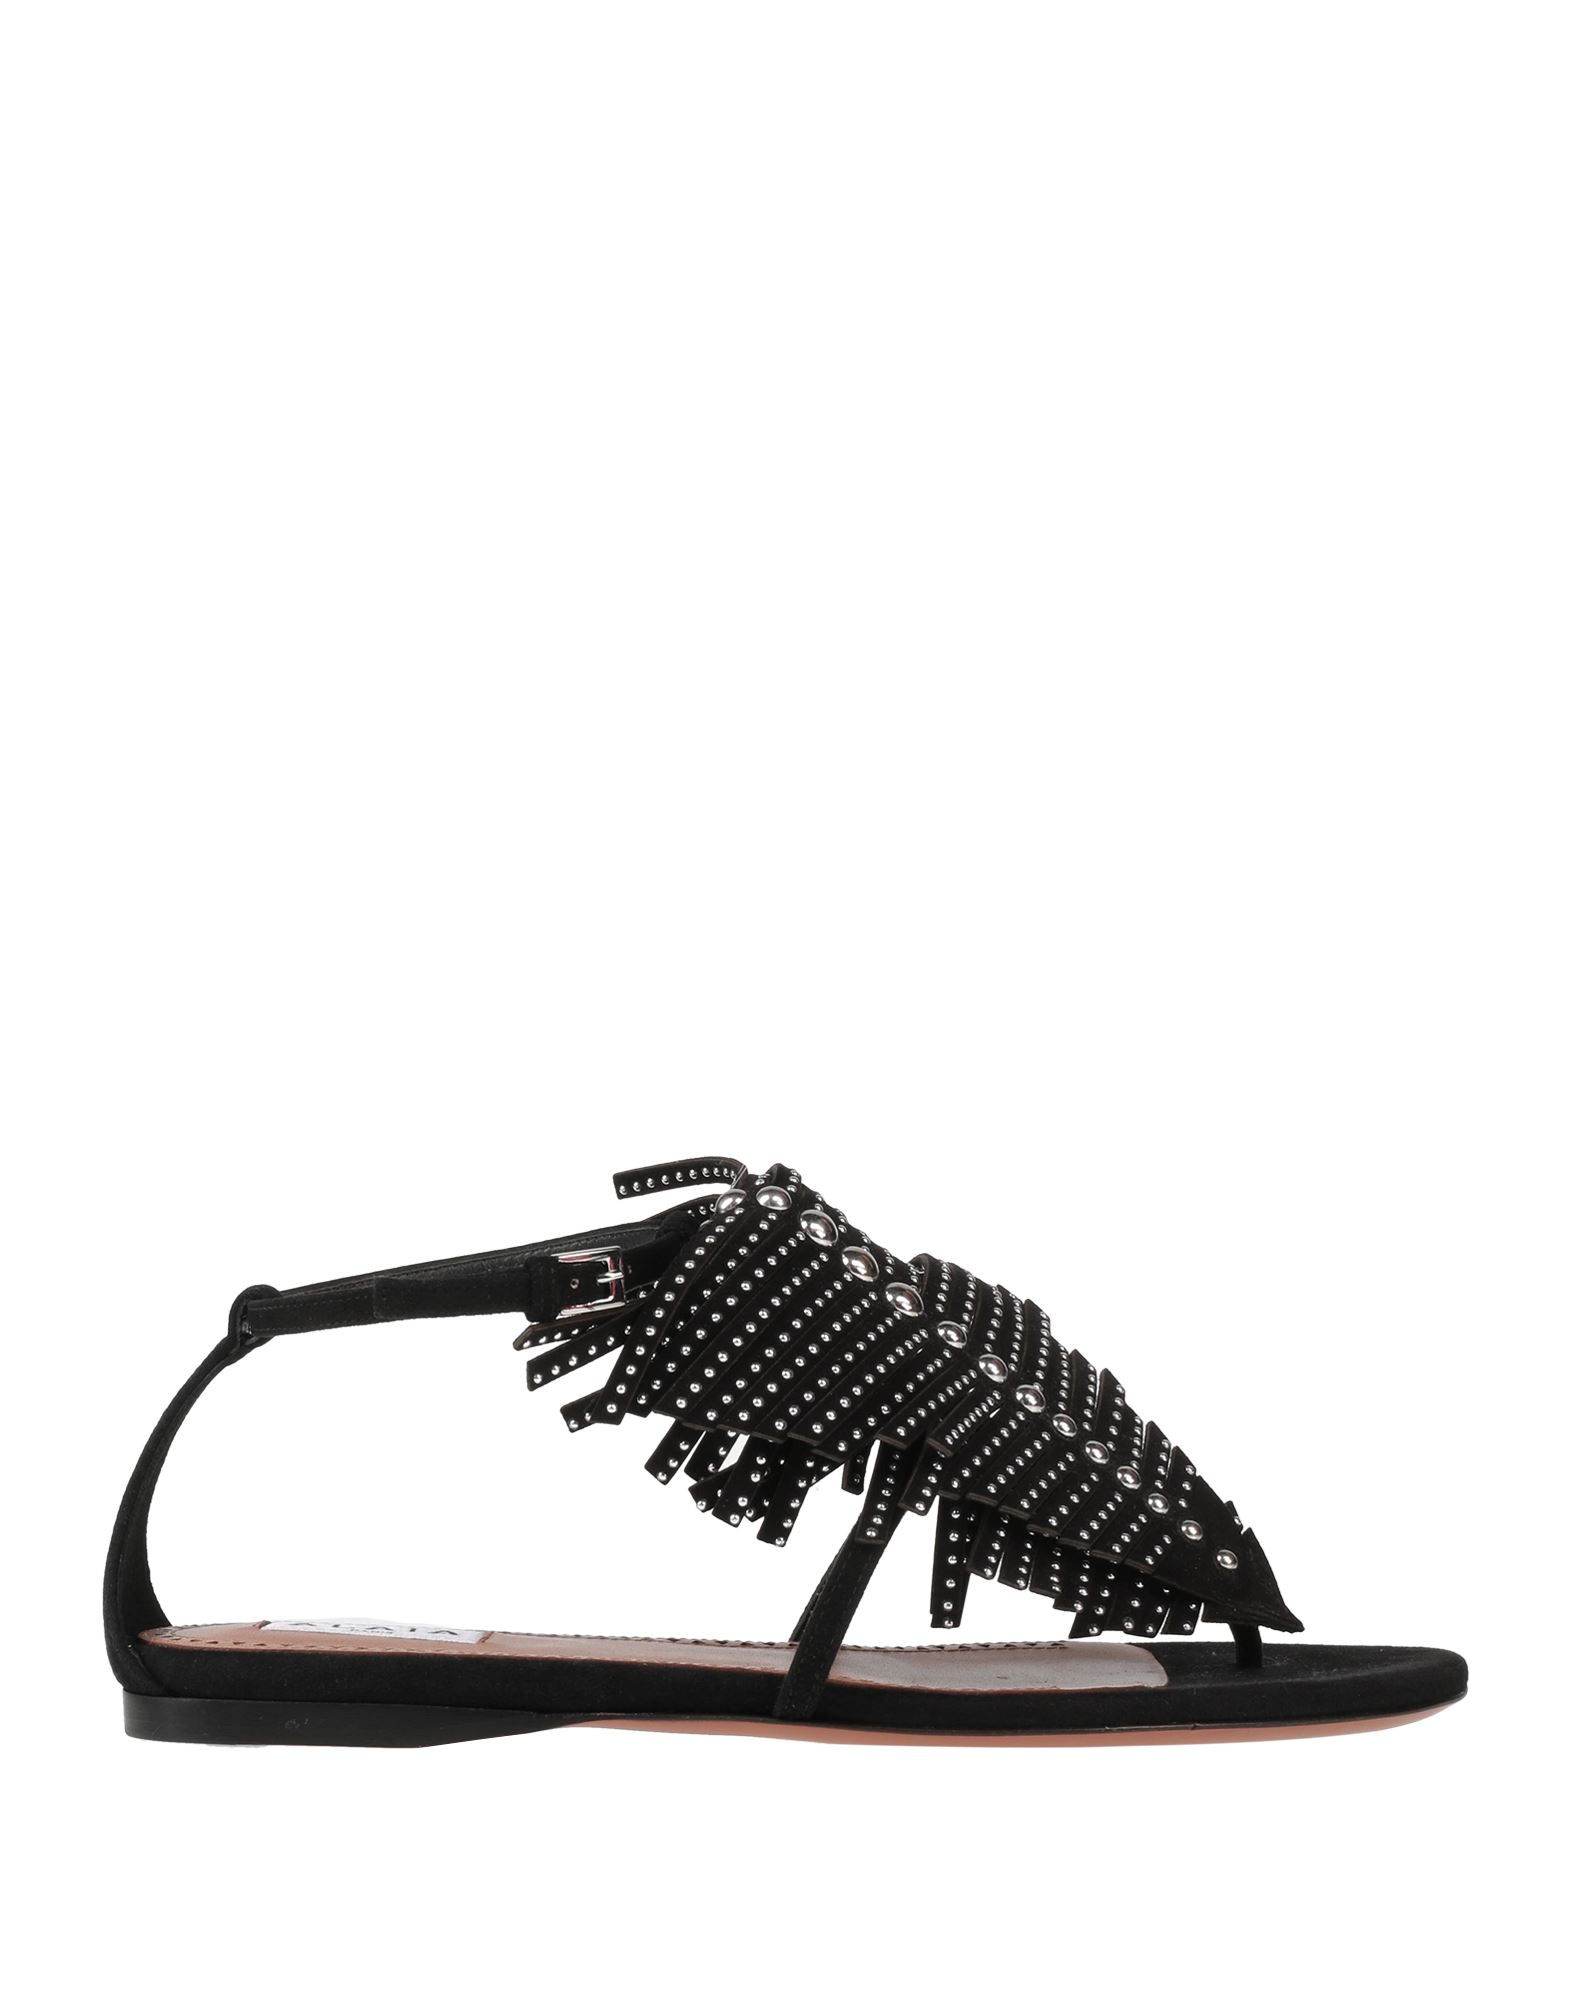 Alaïa Woman Thong Sandal Black Size 7 Leather